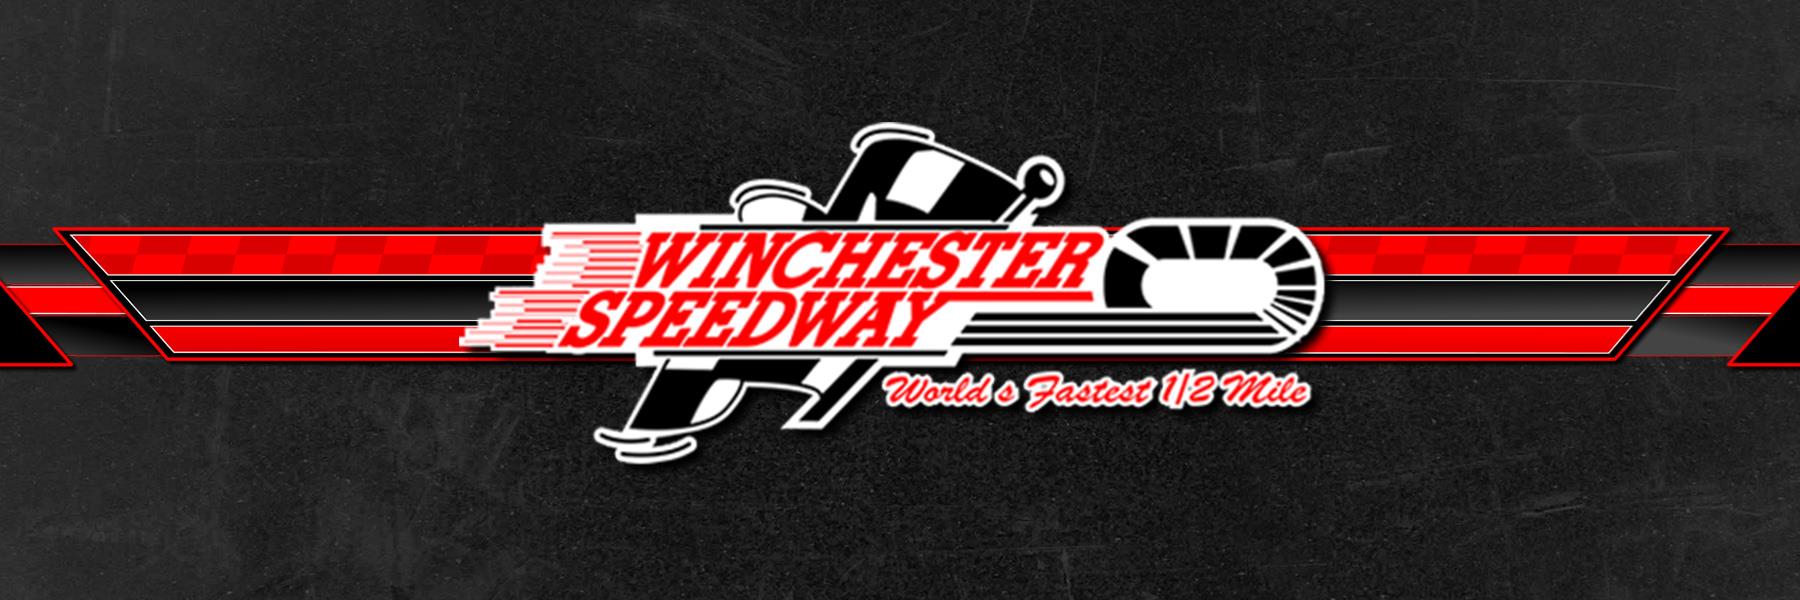 10/11/2015 - Winchester Speedway